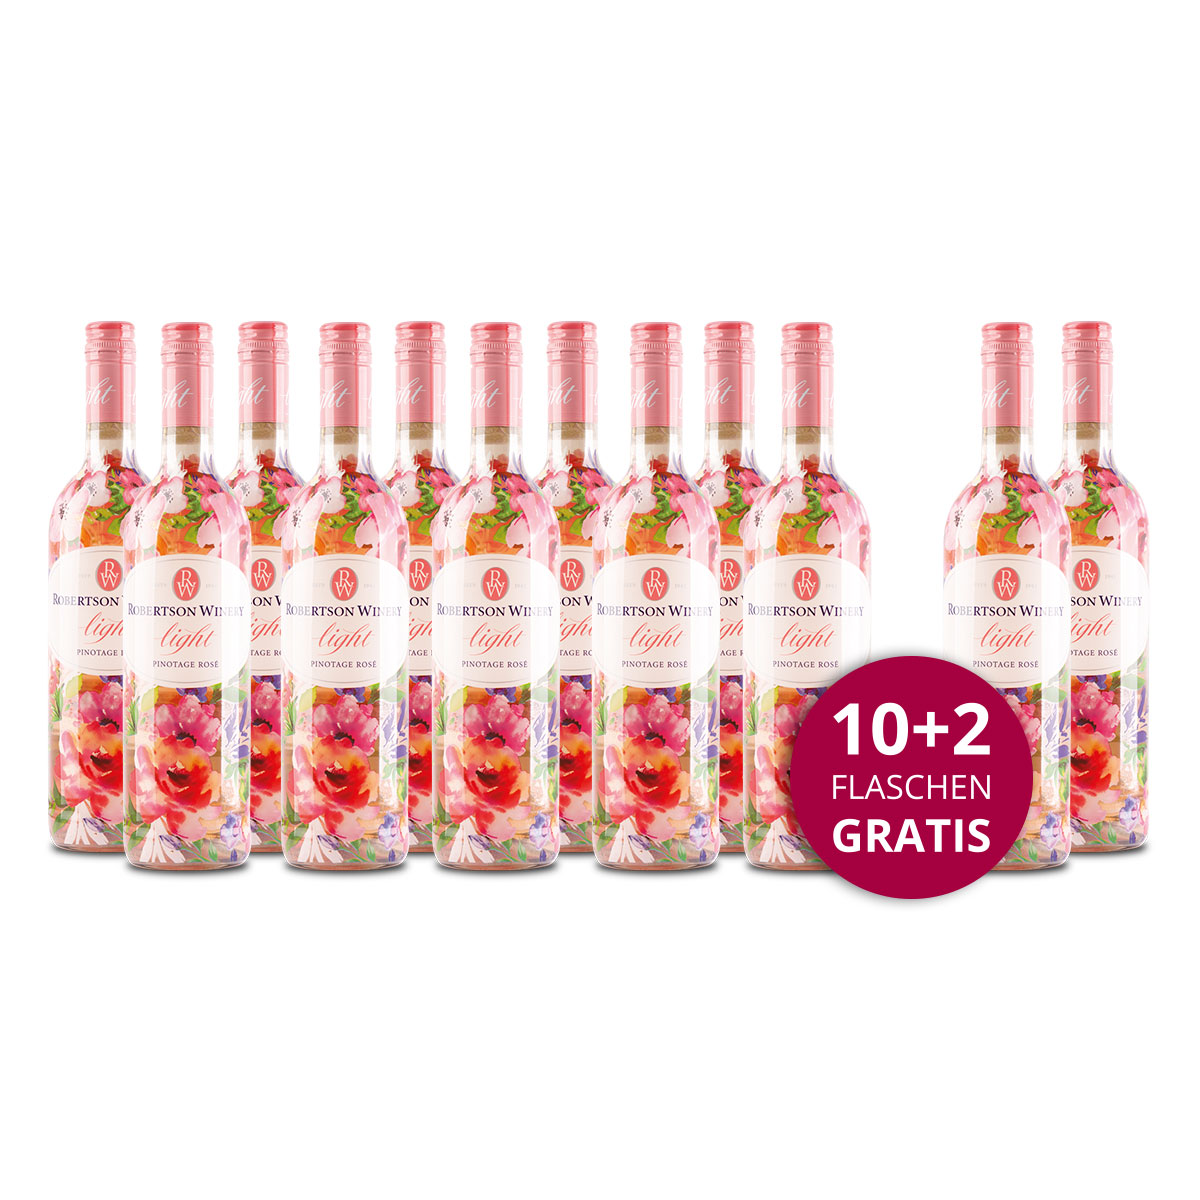 Aktionspaket 12 Fl. Robertson Winery Light Pinotage Rosé 